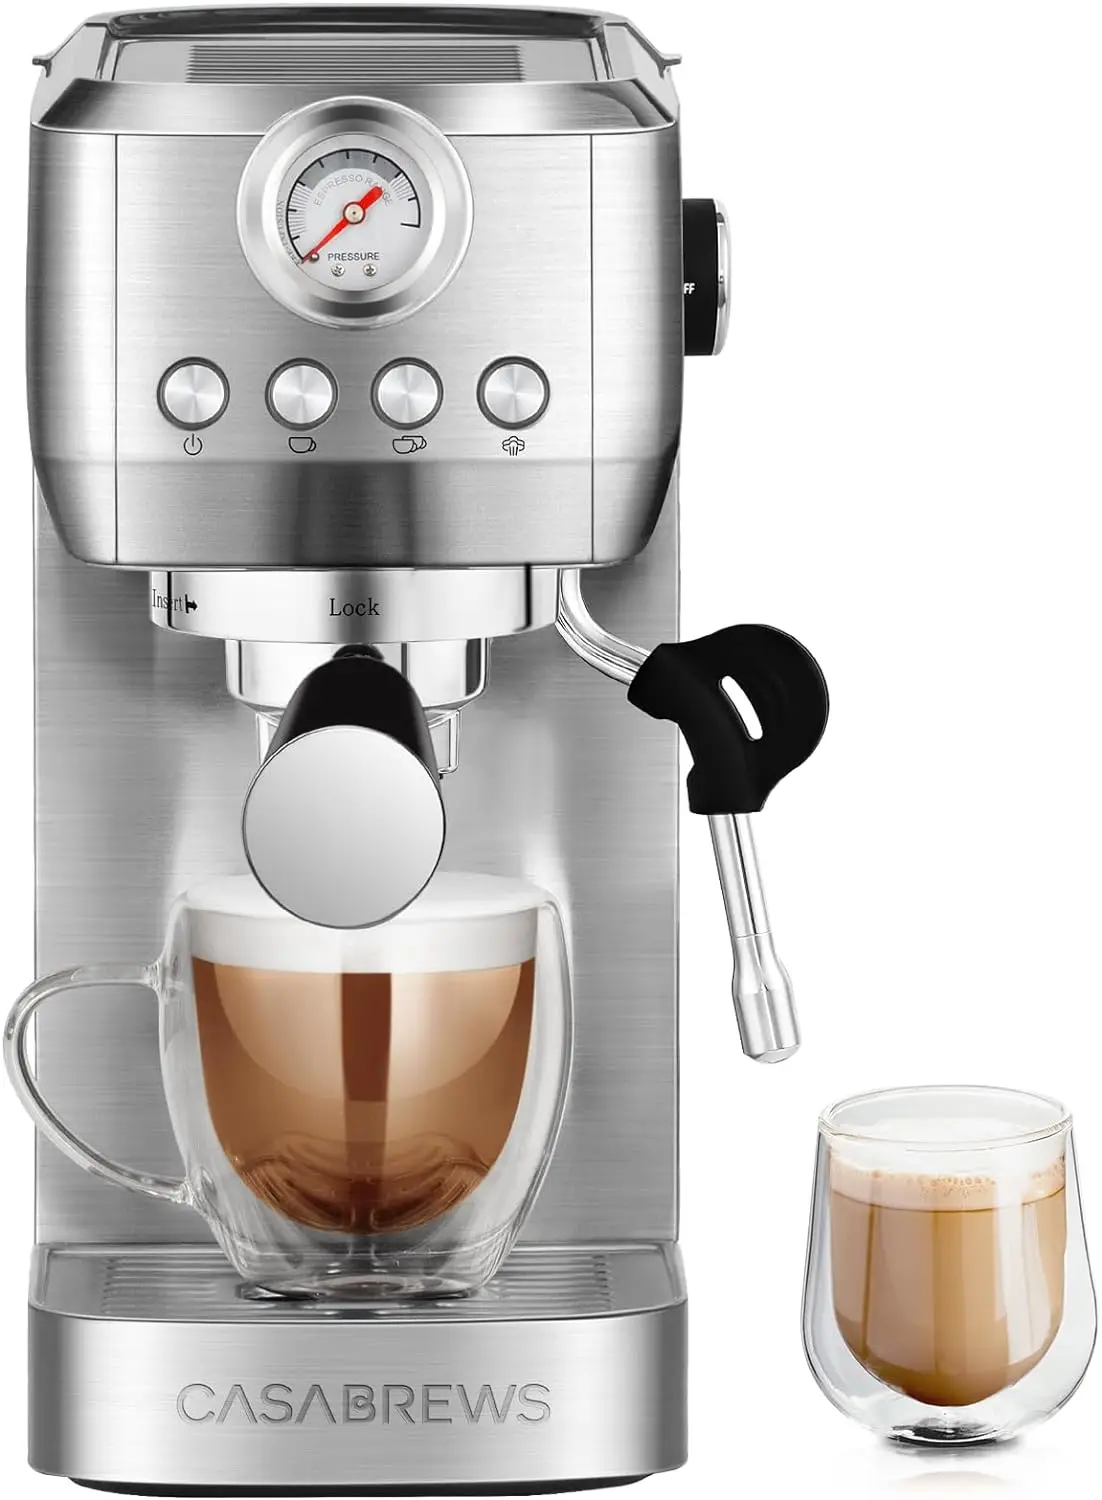 

Espresso Machine 20 Bar, Stainless Steel Espresso Maker With Steam Milk Frother, Coffee Machine Cappuccino Latte Machine